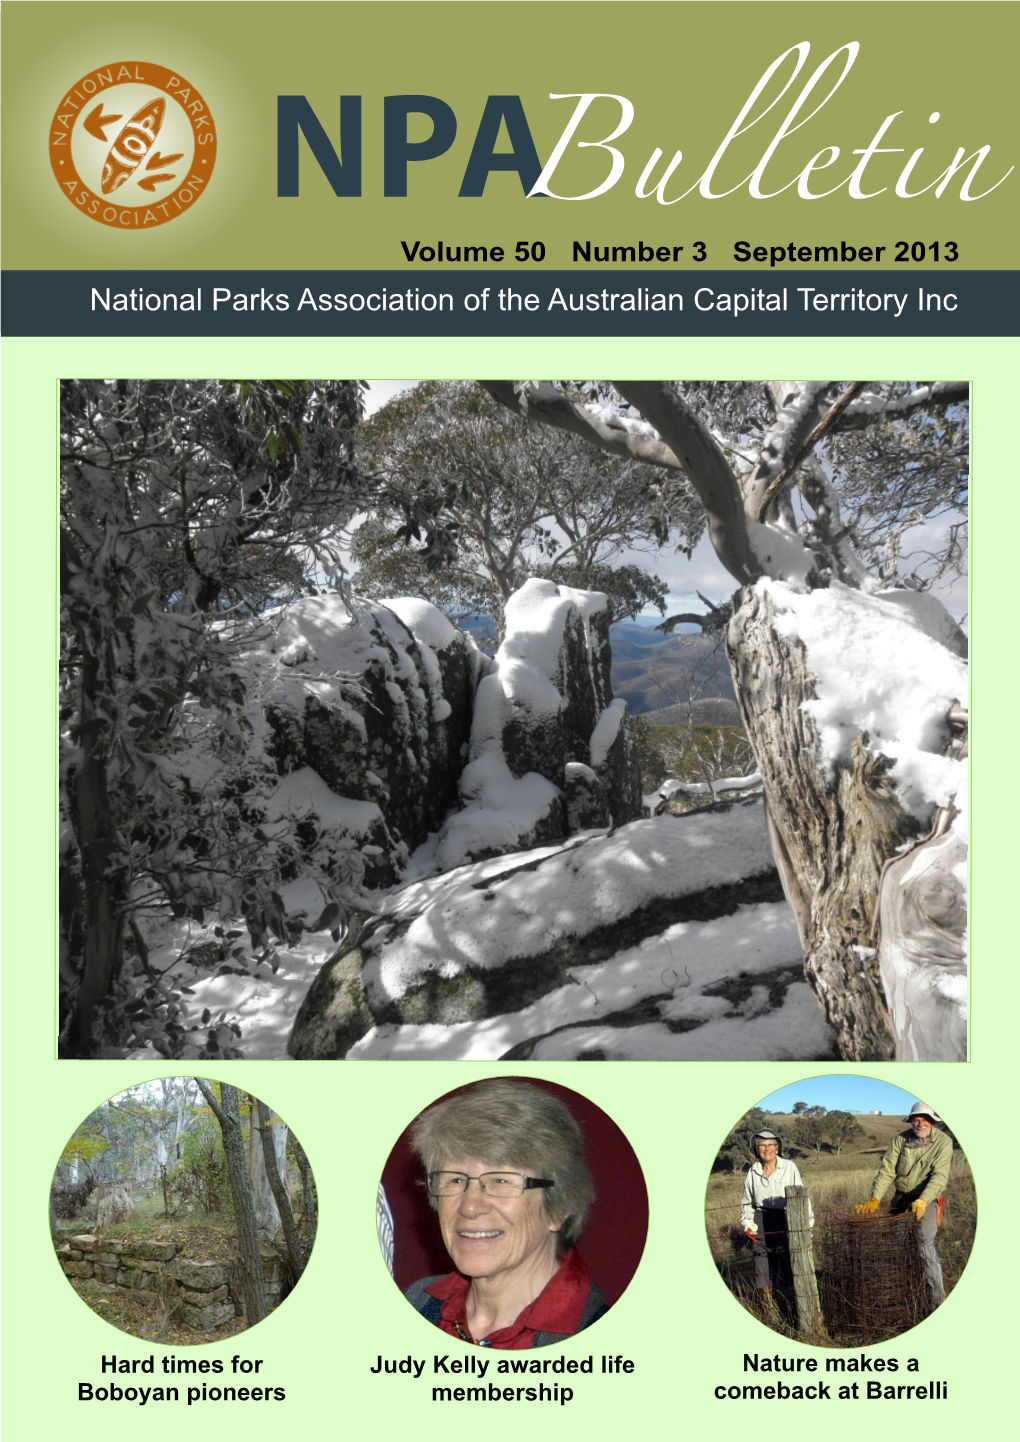 NPA Bulletin Vol 50 No 3 Sept 2013